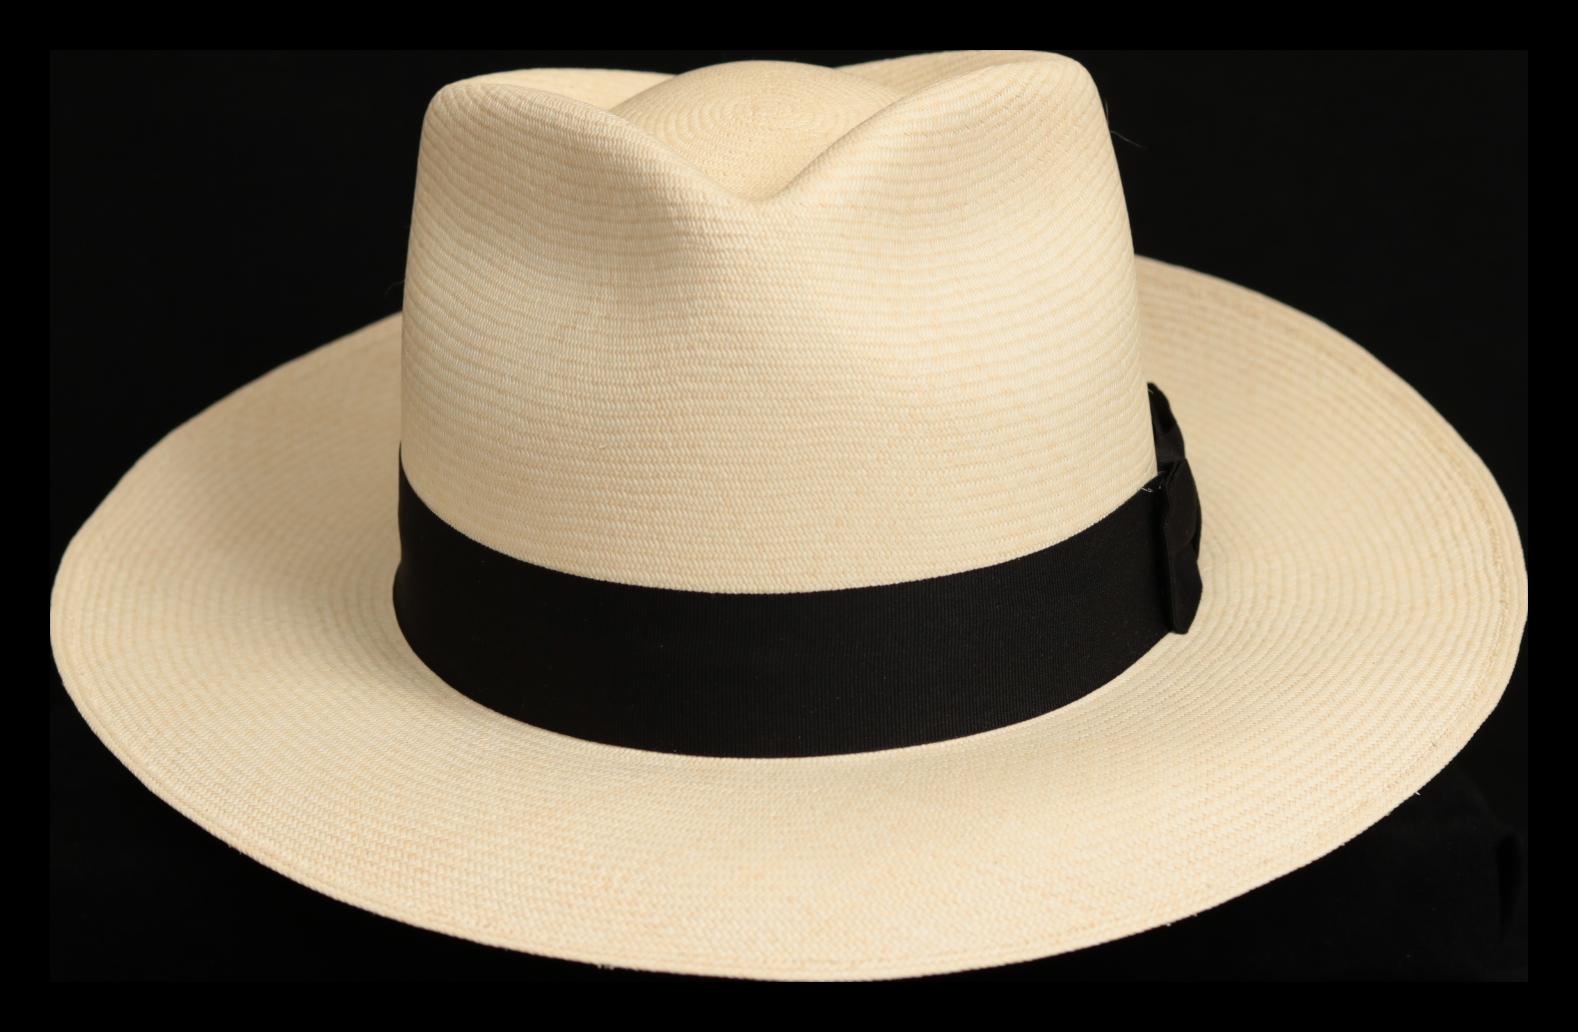 Montecristi Super Fino Plantation Panama Hat